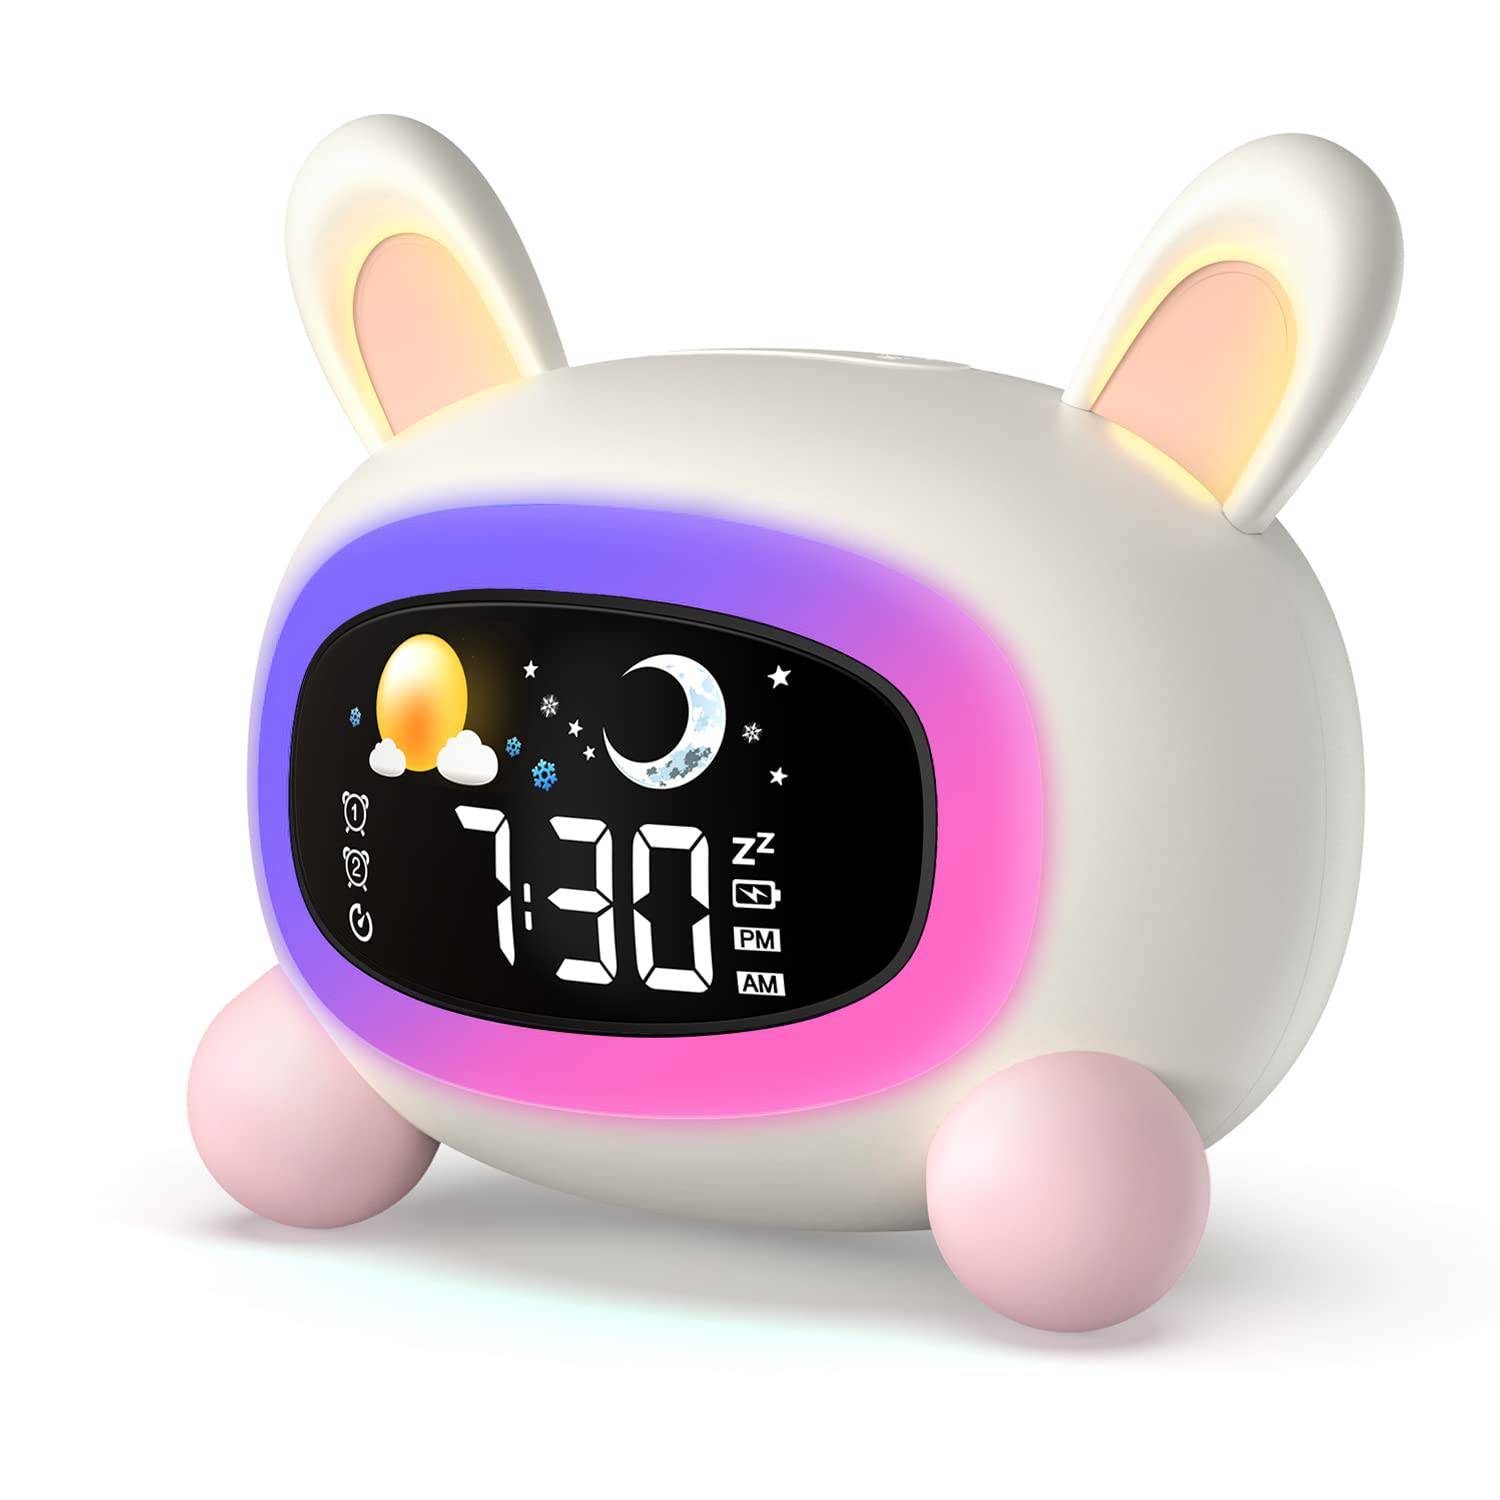 Reloj Despertador Infantil Conejo 17cmx11cm